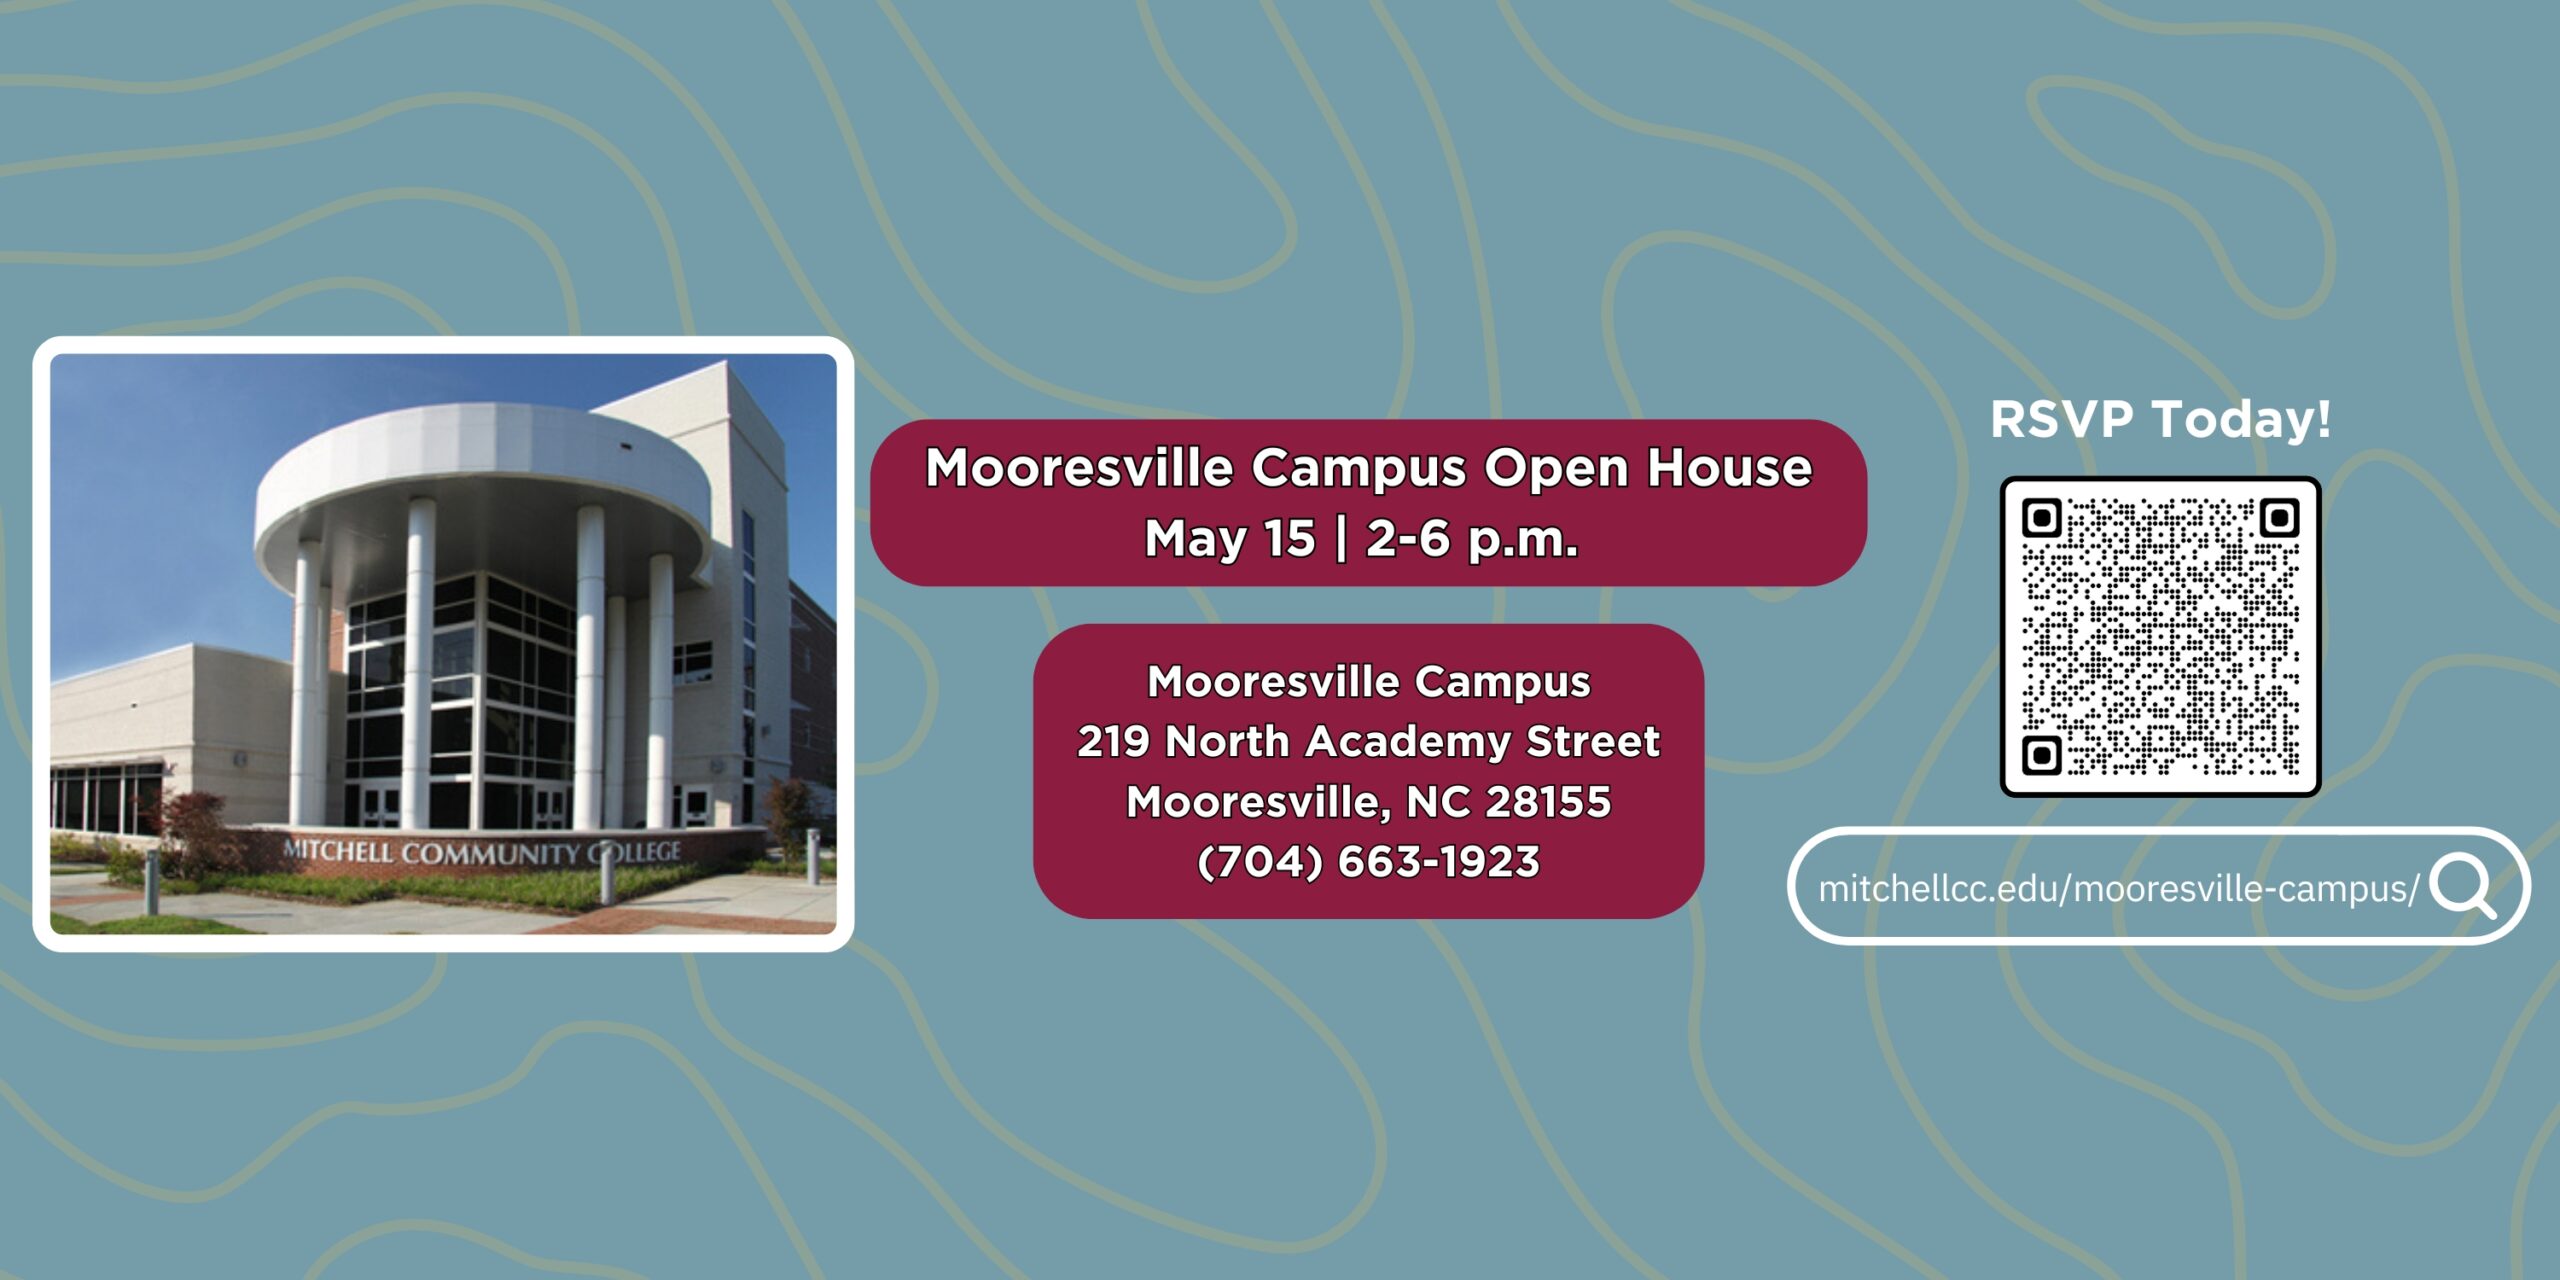 「ムーアズビル キャンパス オープン ハウス | 15 月 2 日 | 午後 6 時から 219 時 | ムーアズビル キャンパス 28155 North Academy Street - Mooresville, NC 704 - (663 1923-XNUMX)」と書かれたバナー。詳細を確認するには、バナーをクリックするか、mitchellcc.edu/mooresville- にアクセスしてください。キャンパス/"。